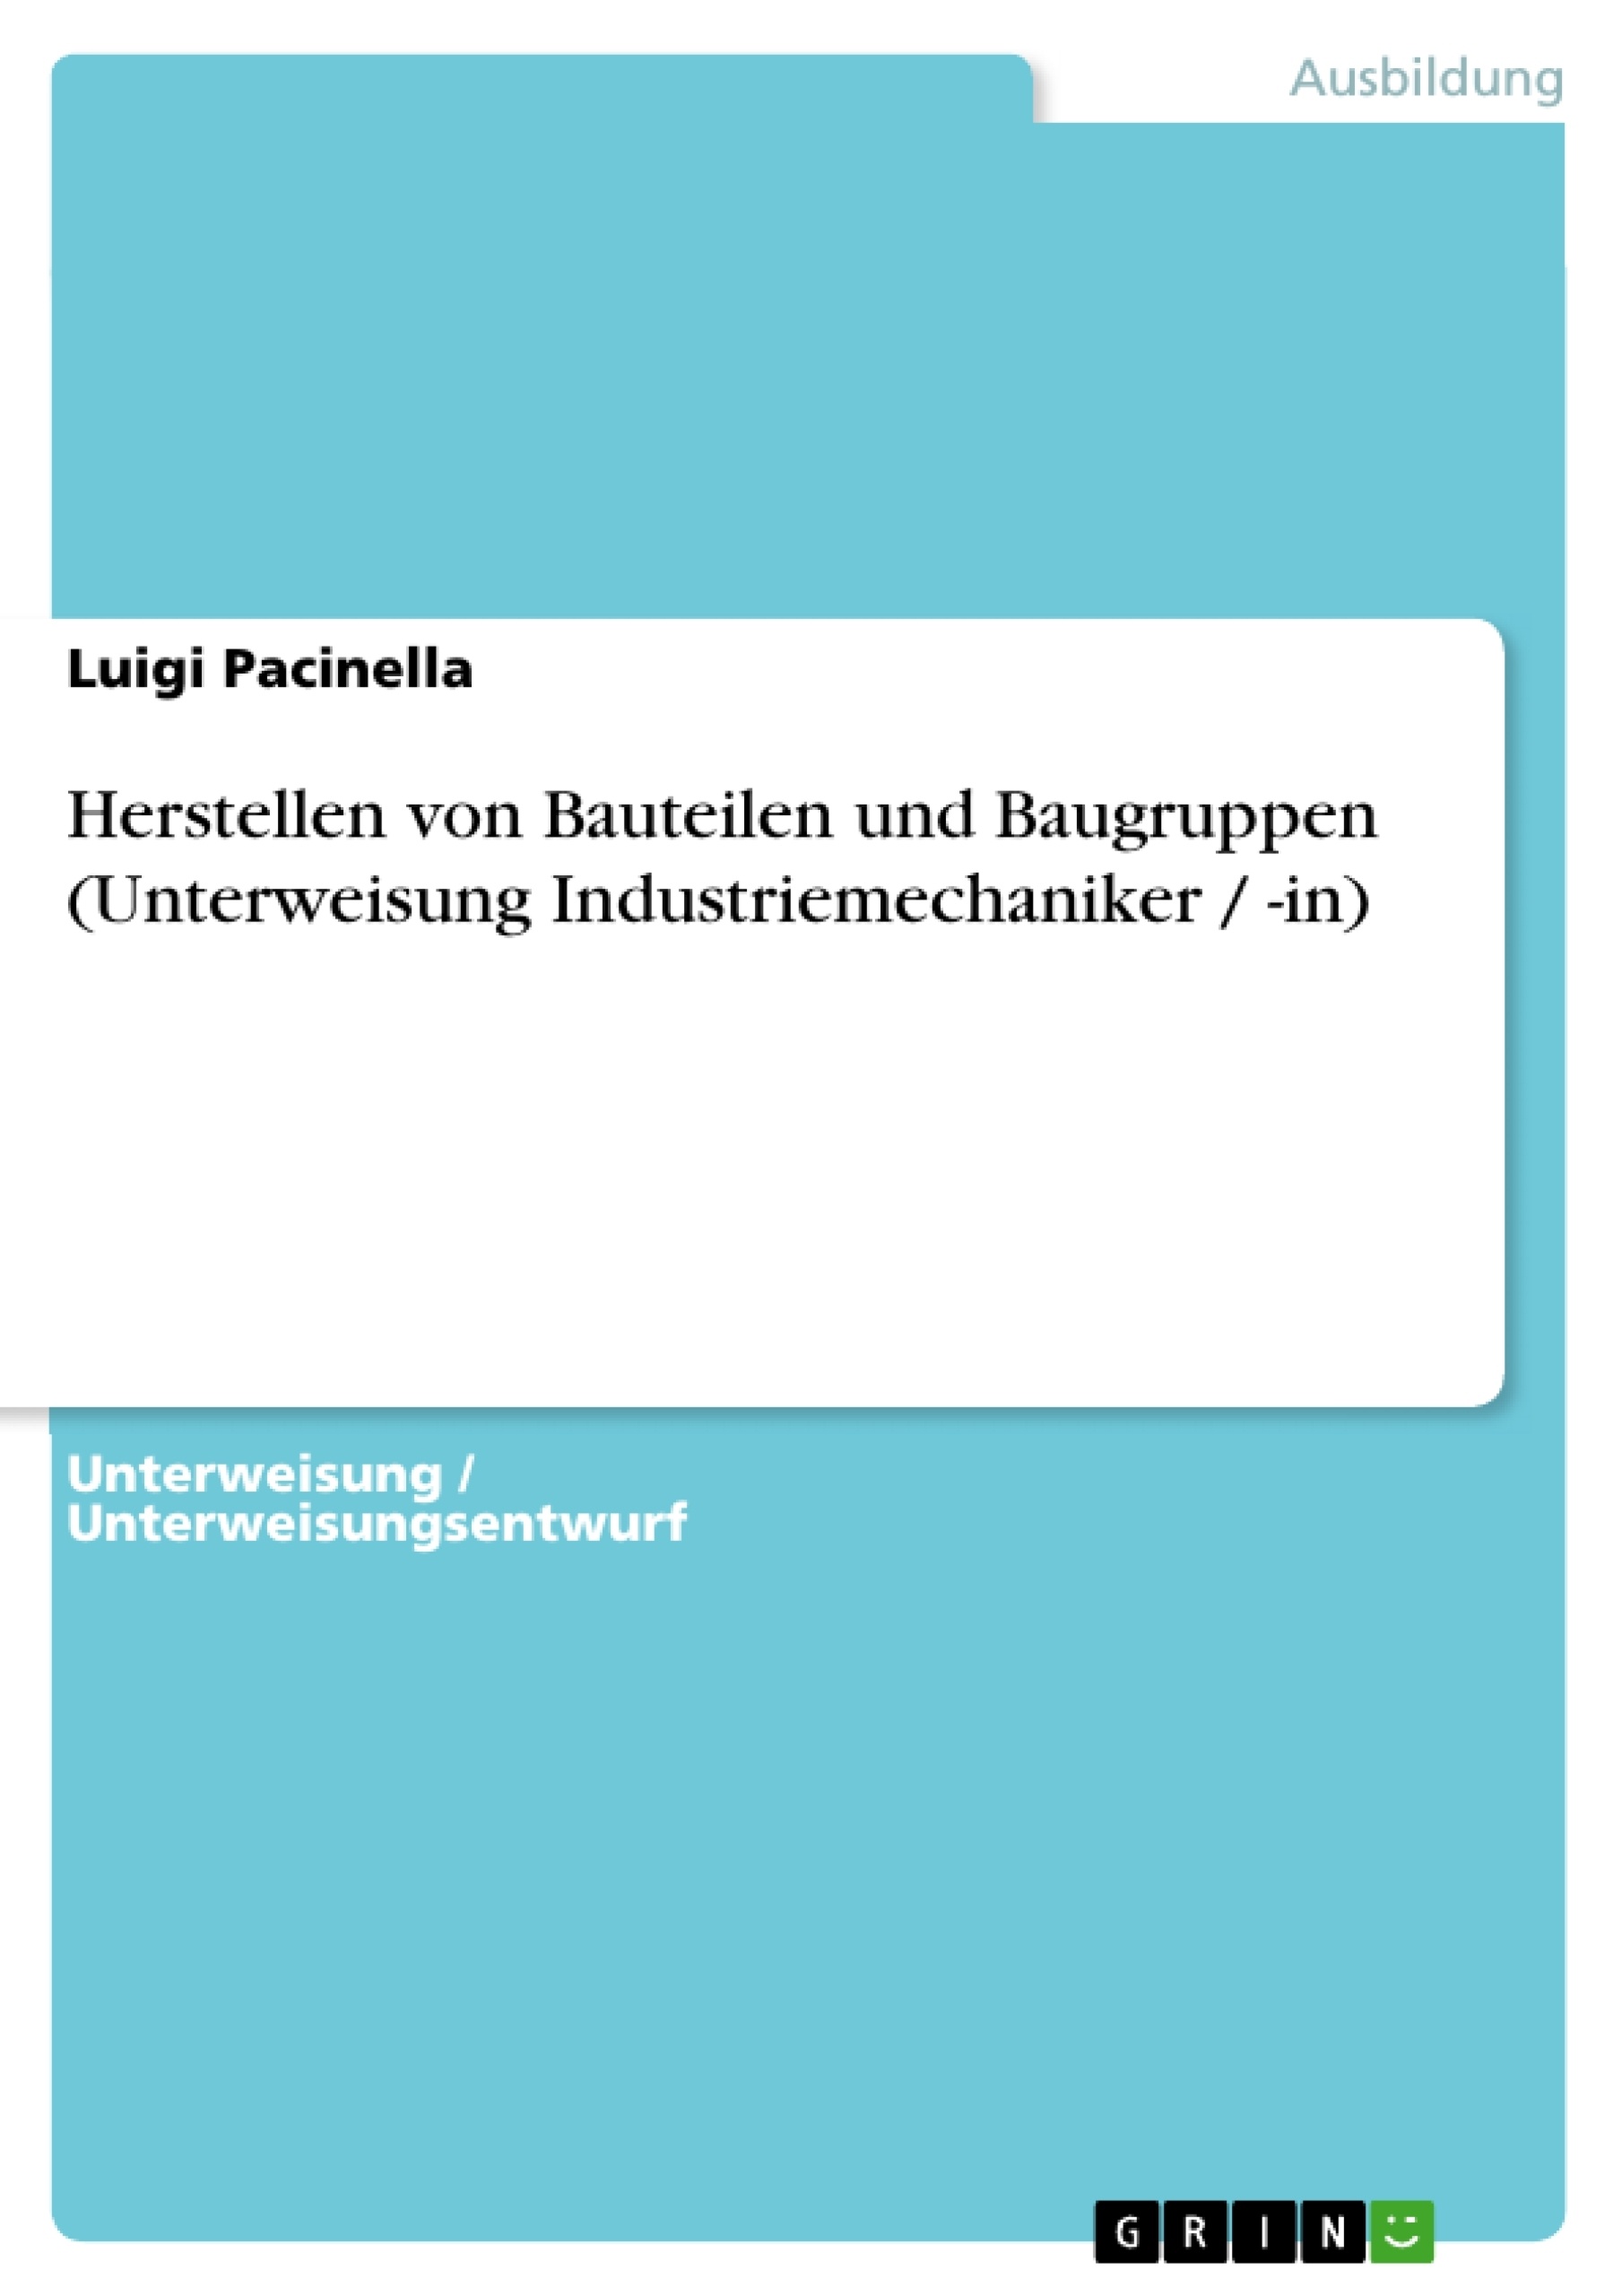 Title: Herstellen von Bauteilen und Baugruppen (Unterweisung Industriemechaniker / -in)